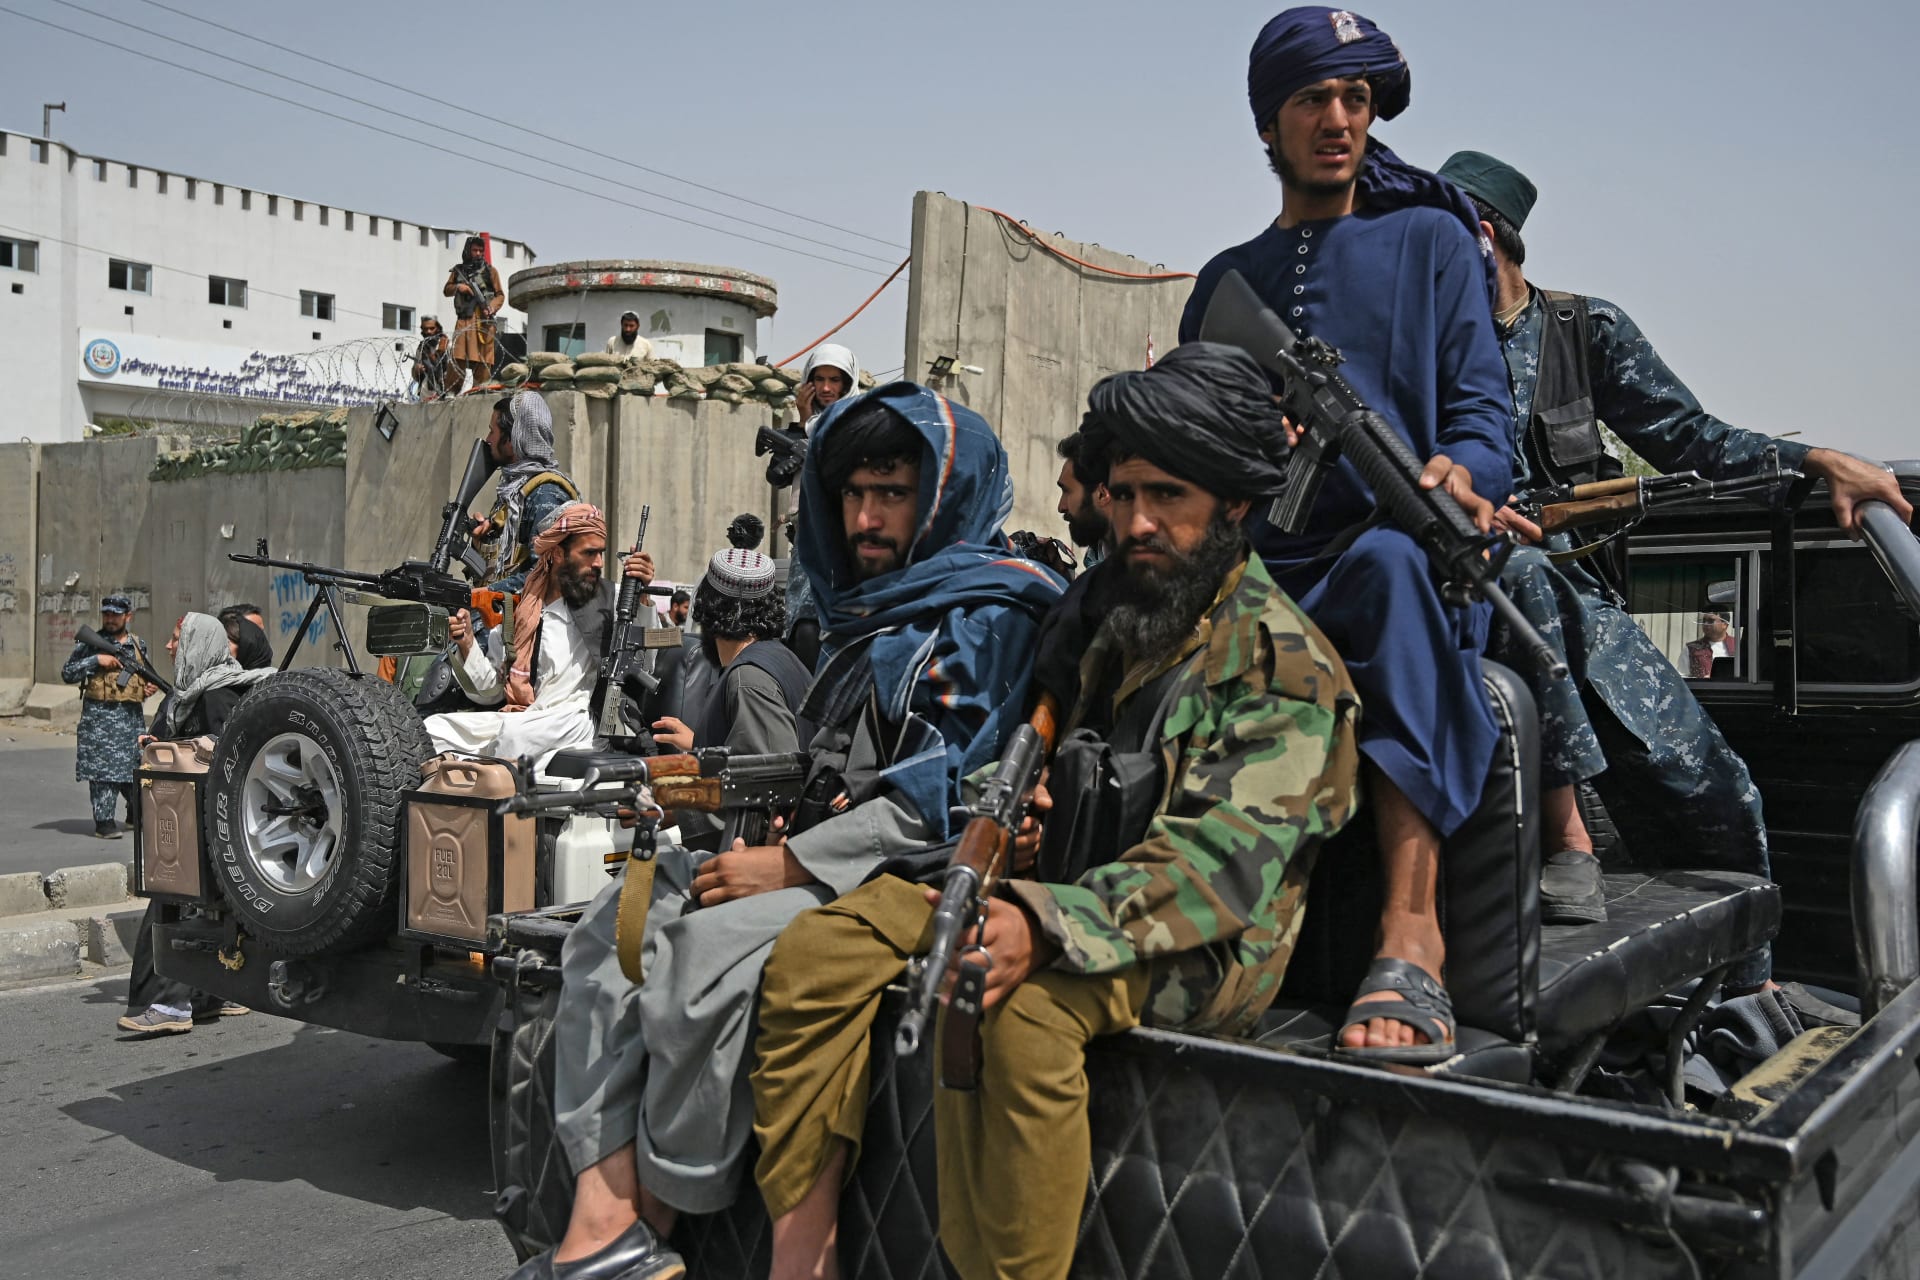 مقاتلو طالبان يرافقون نساء محجبات أثناء مسيرة مؤيدة لطالبان خارج جامعة الشهيد رباني في كابول - 11 سبتمبر 2021